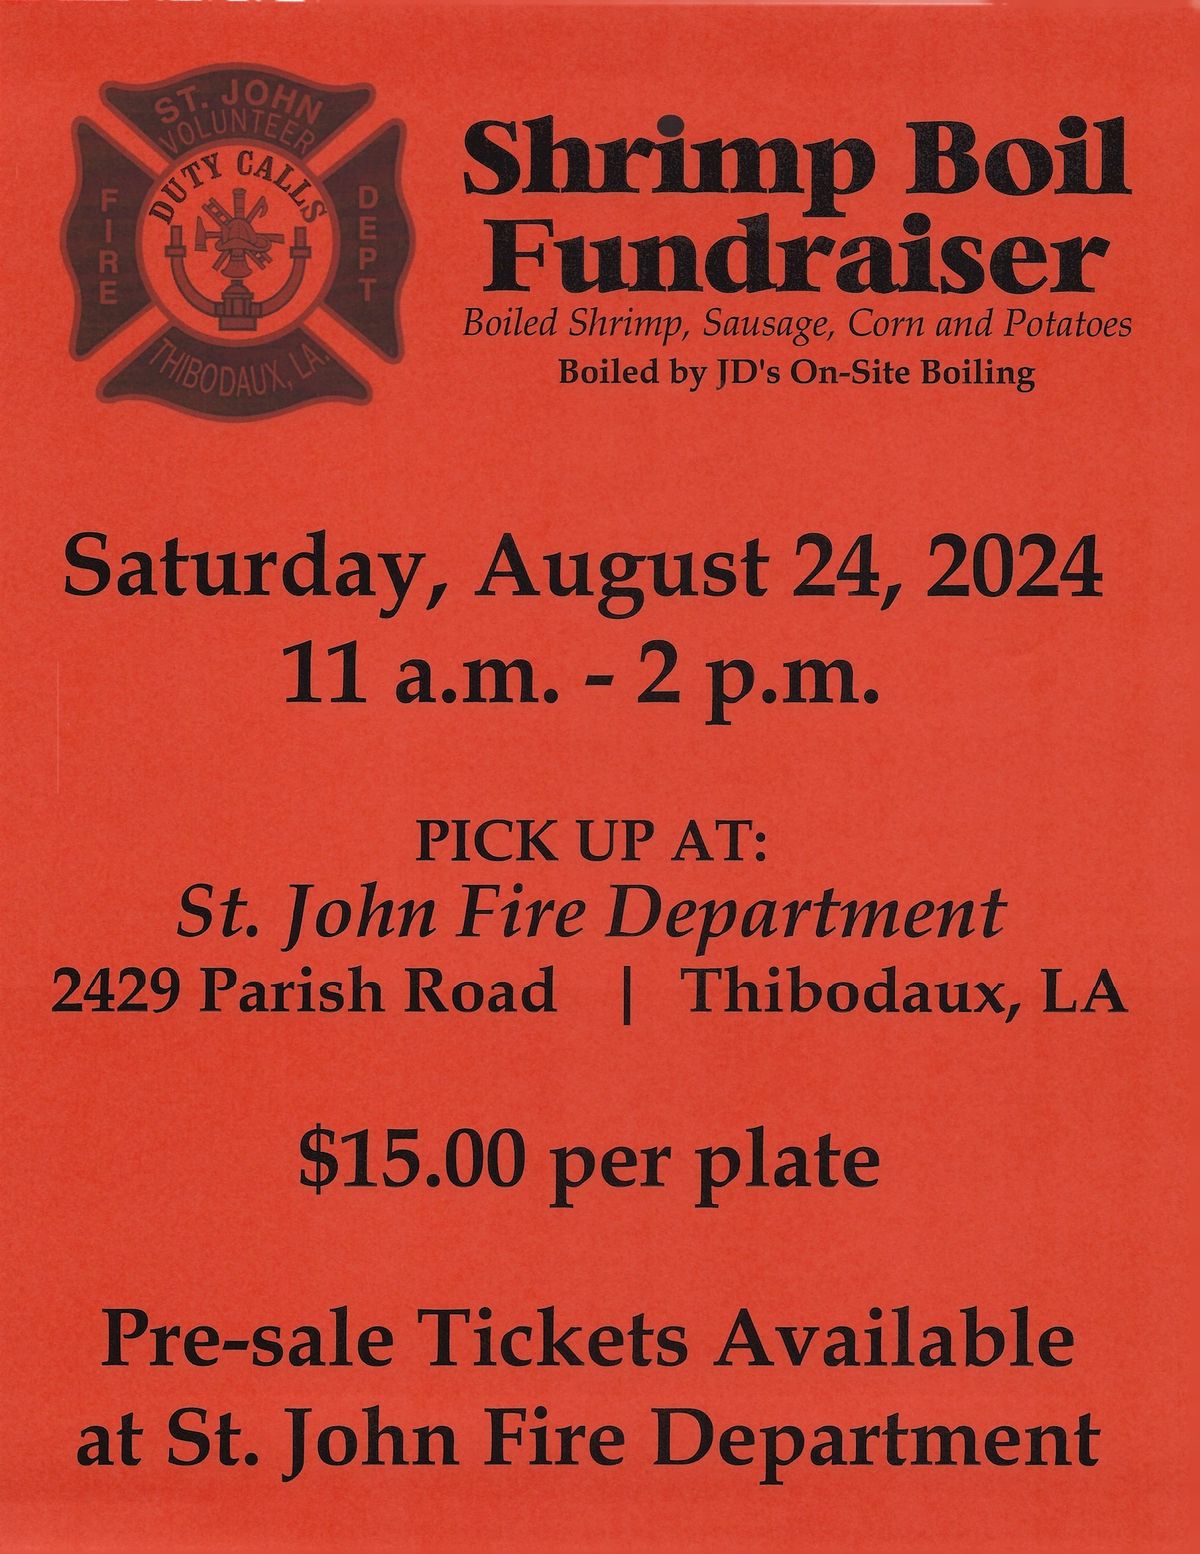 St John Volunteer Fire Department annual shrimp boil fundraiser